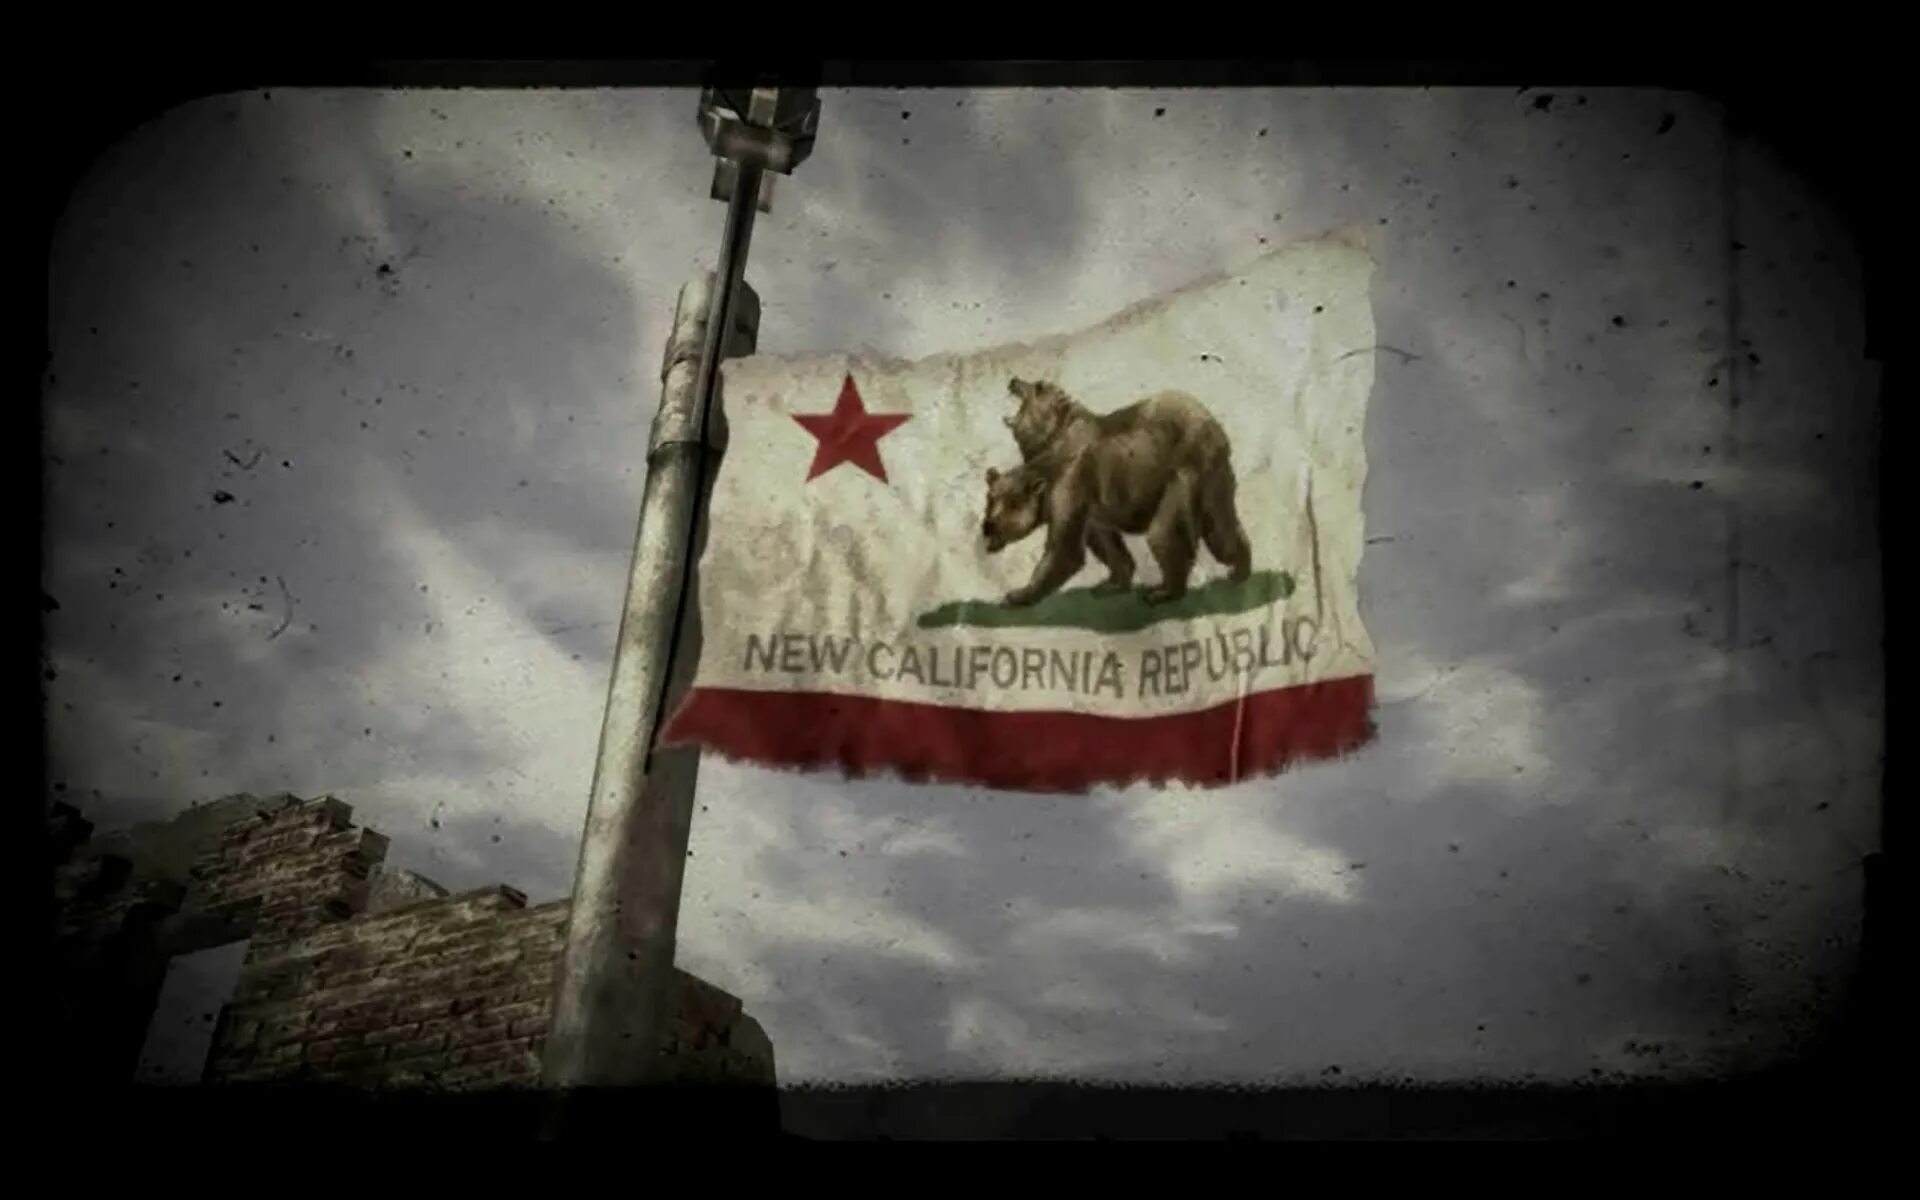 Новая калифорнийская республика fallout. Новая Калифорнийская Республика Fallout флаг. Фоллаут новая Калифорния флаг. НКР фоллаут флаг. Флаг Калифорнии фоллаут.